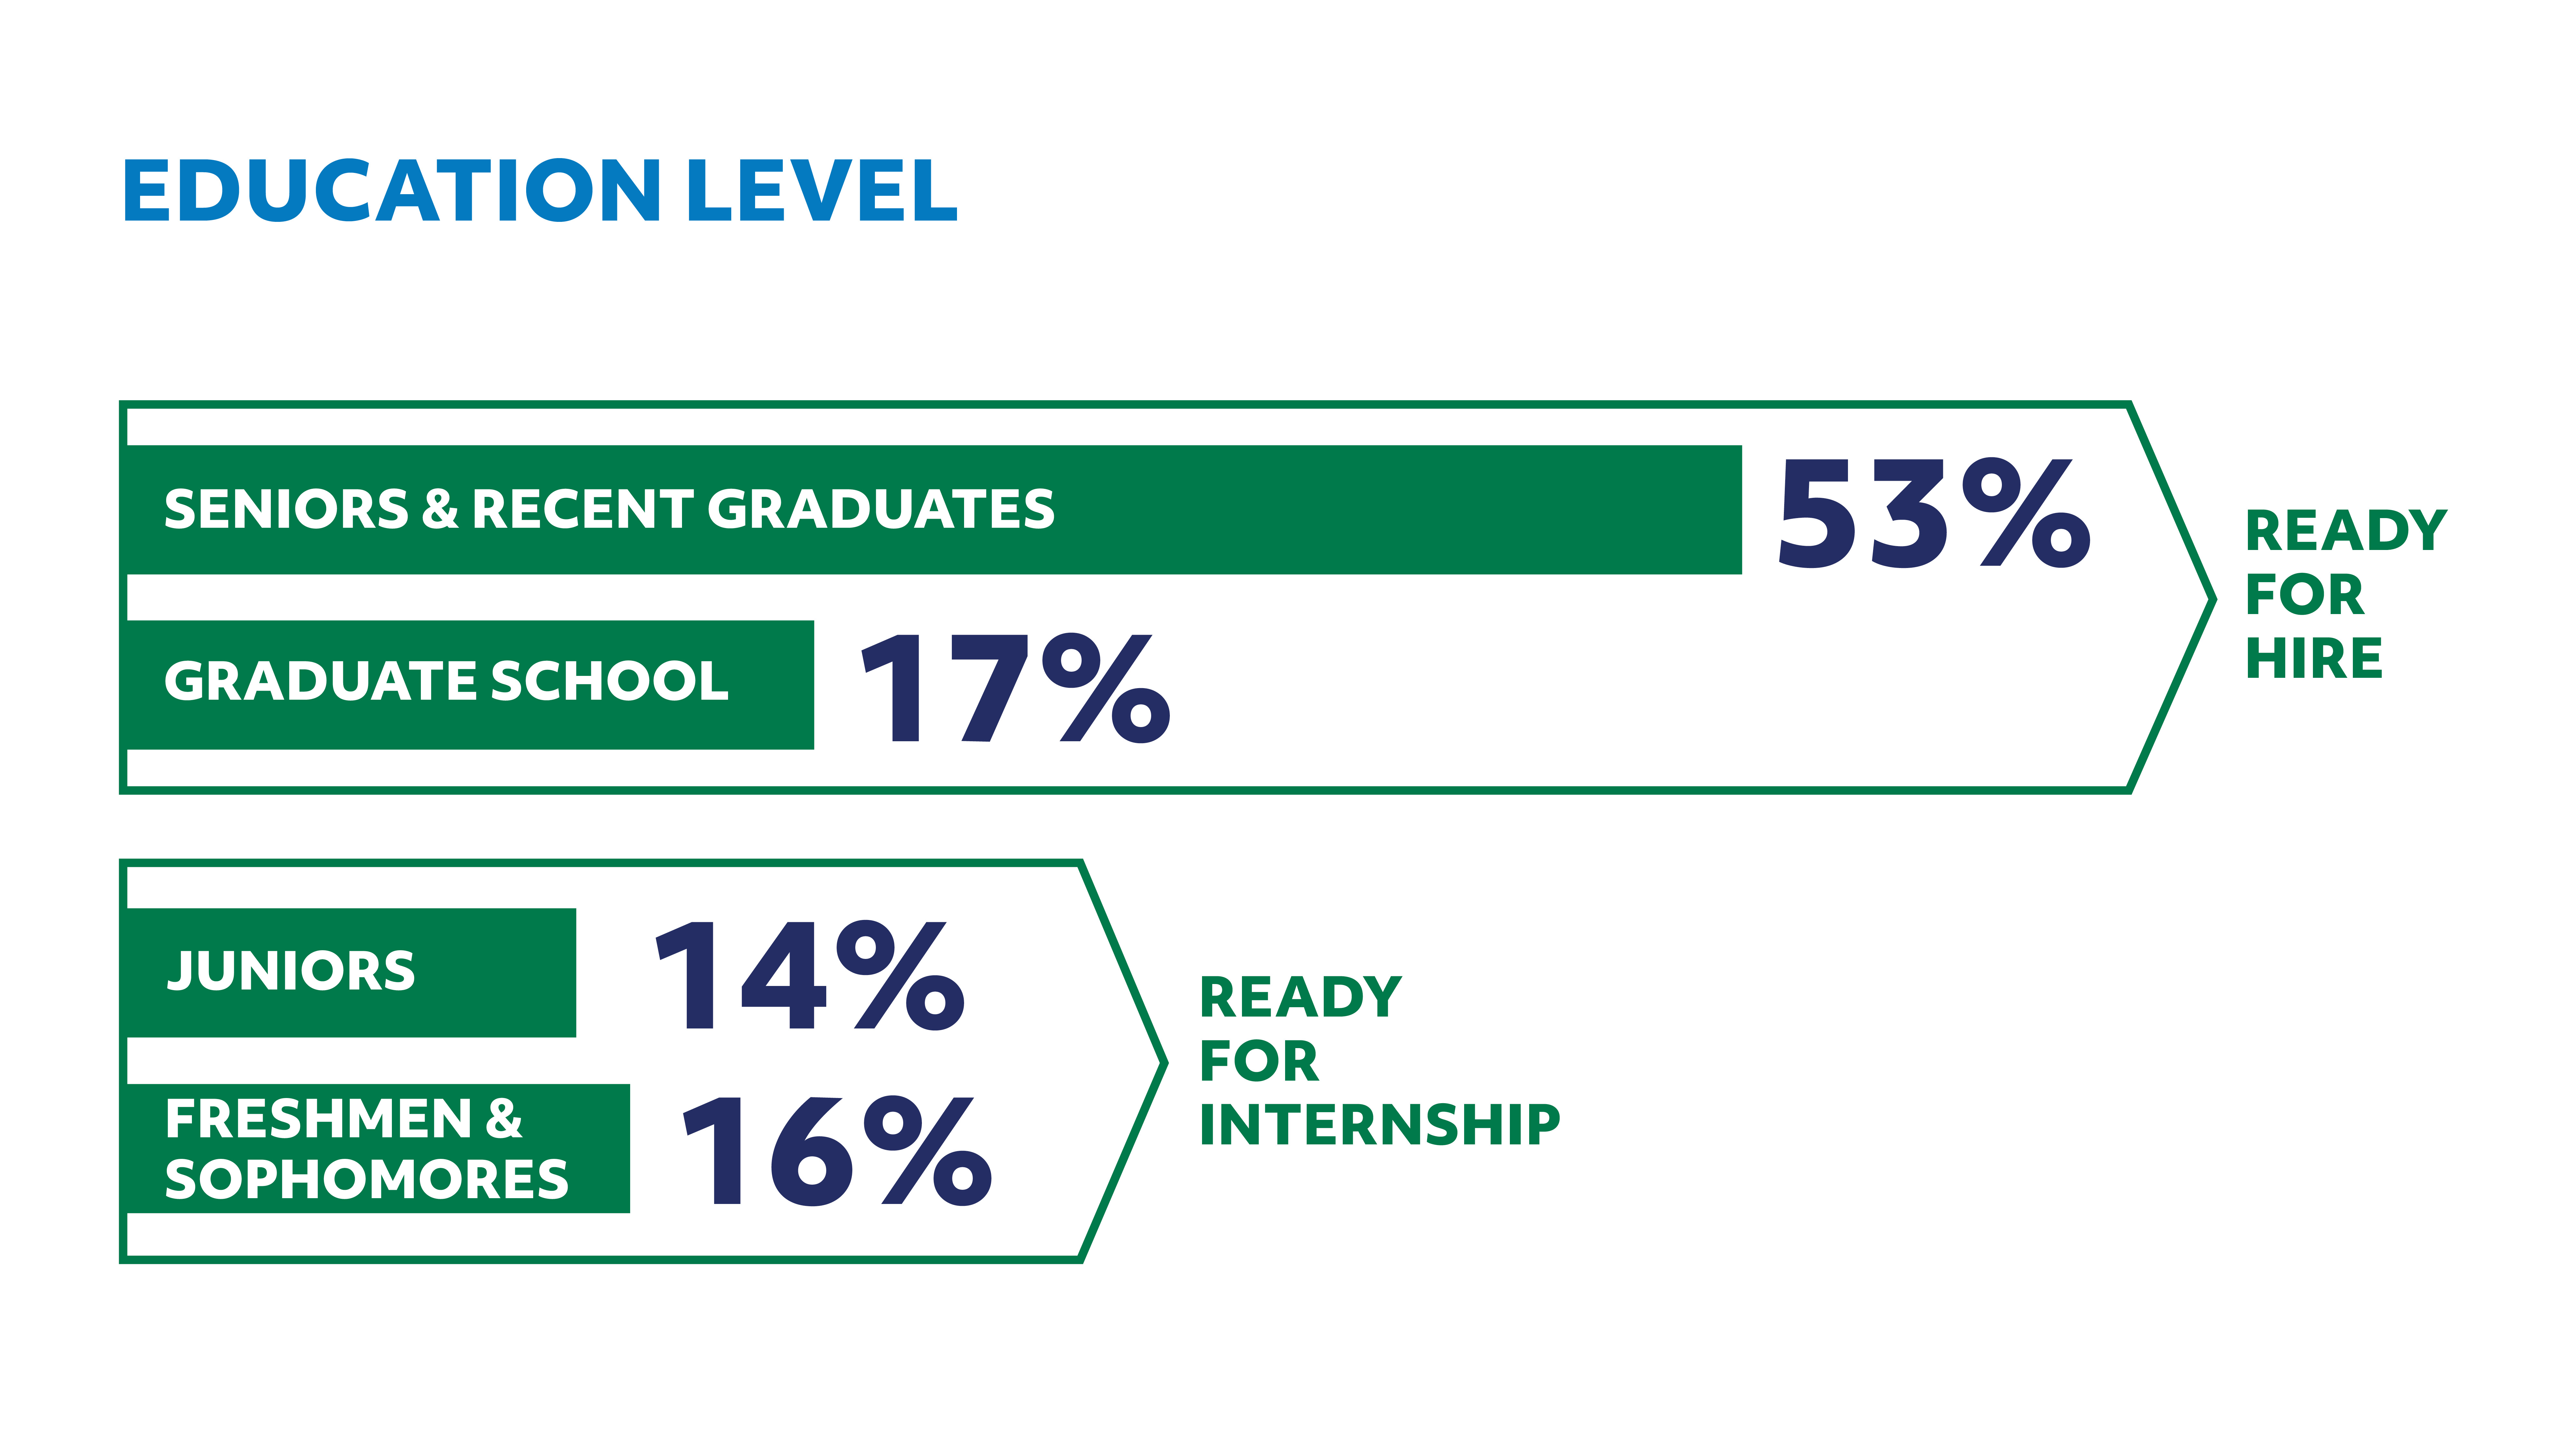 Education Level: 53% Seniors & Recent Graduates, 17% Graduate School, 14% Juniors, 16% Freshmen & Sophomores.